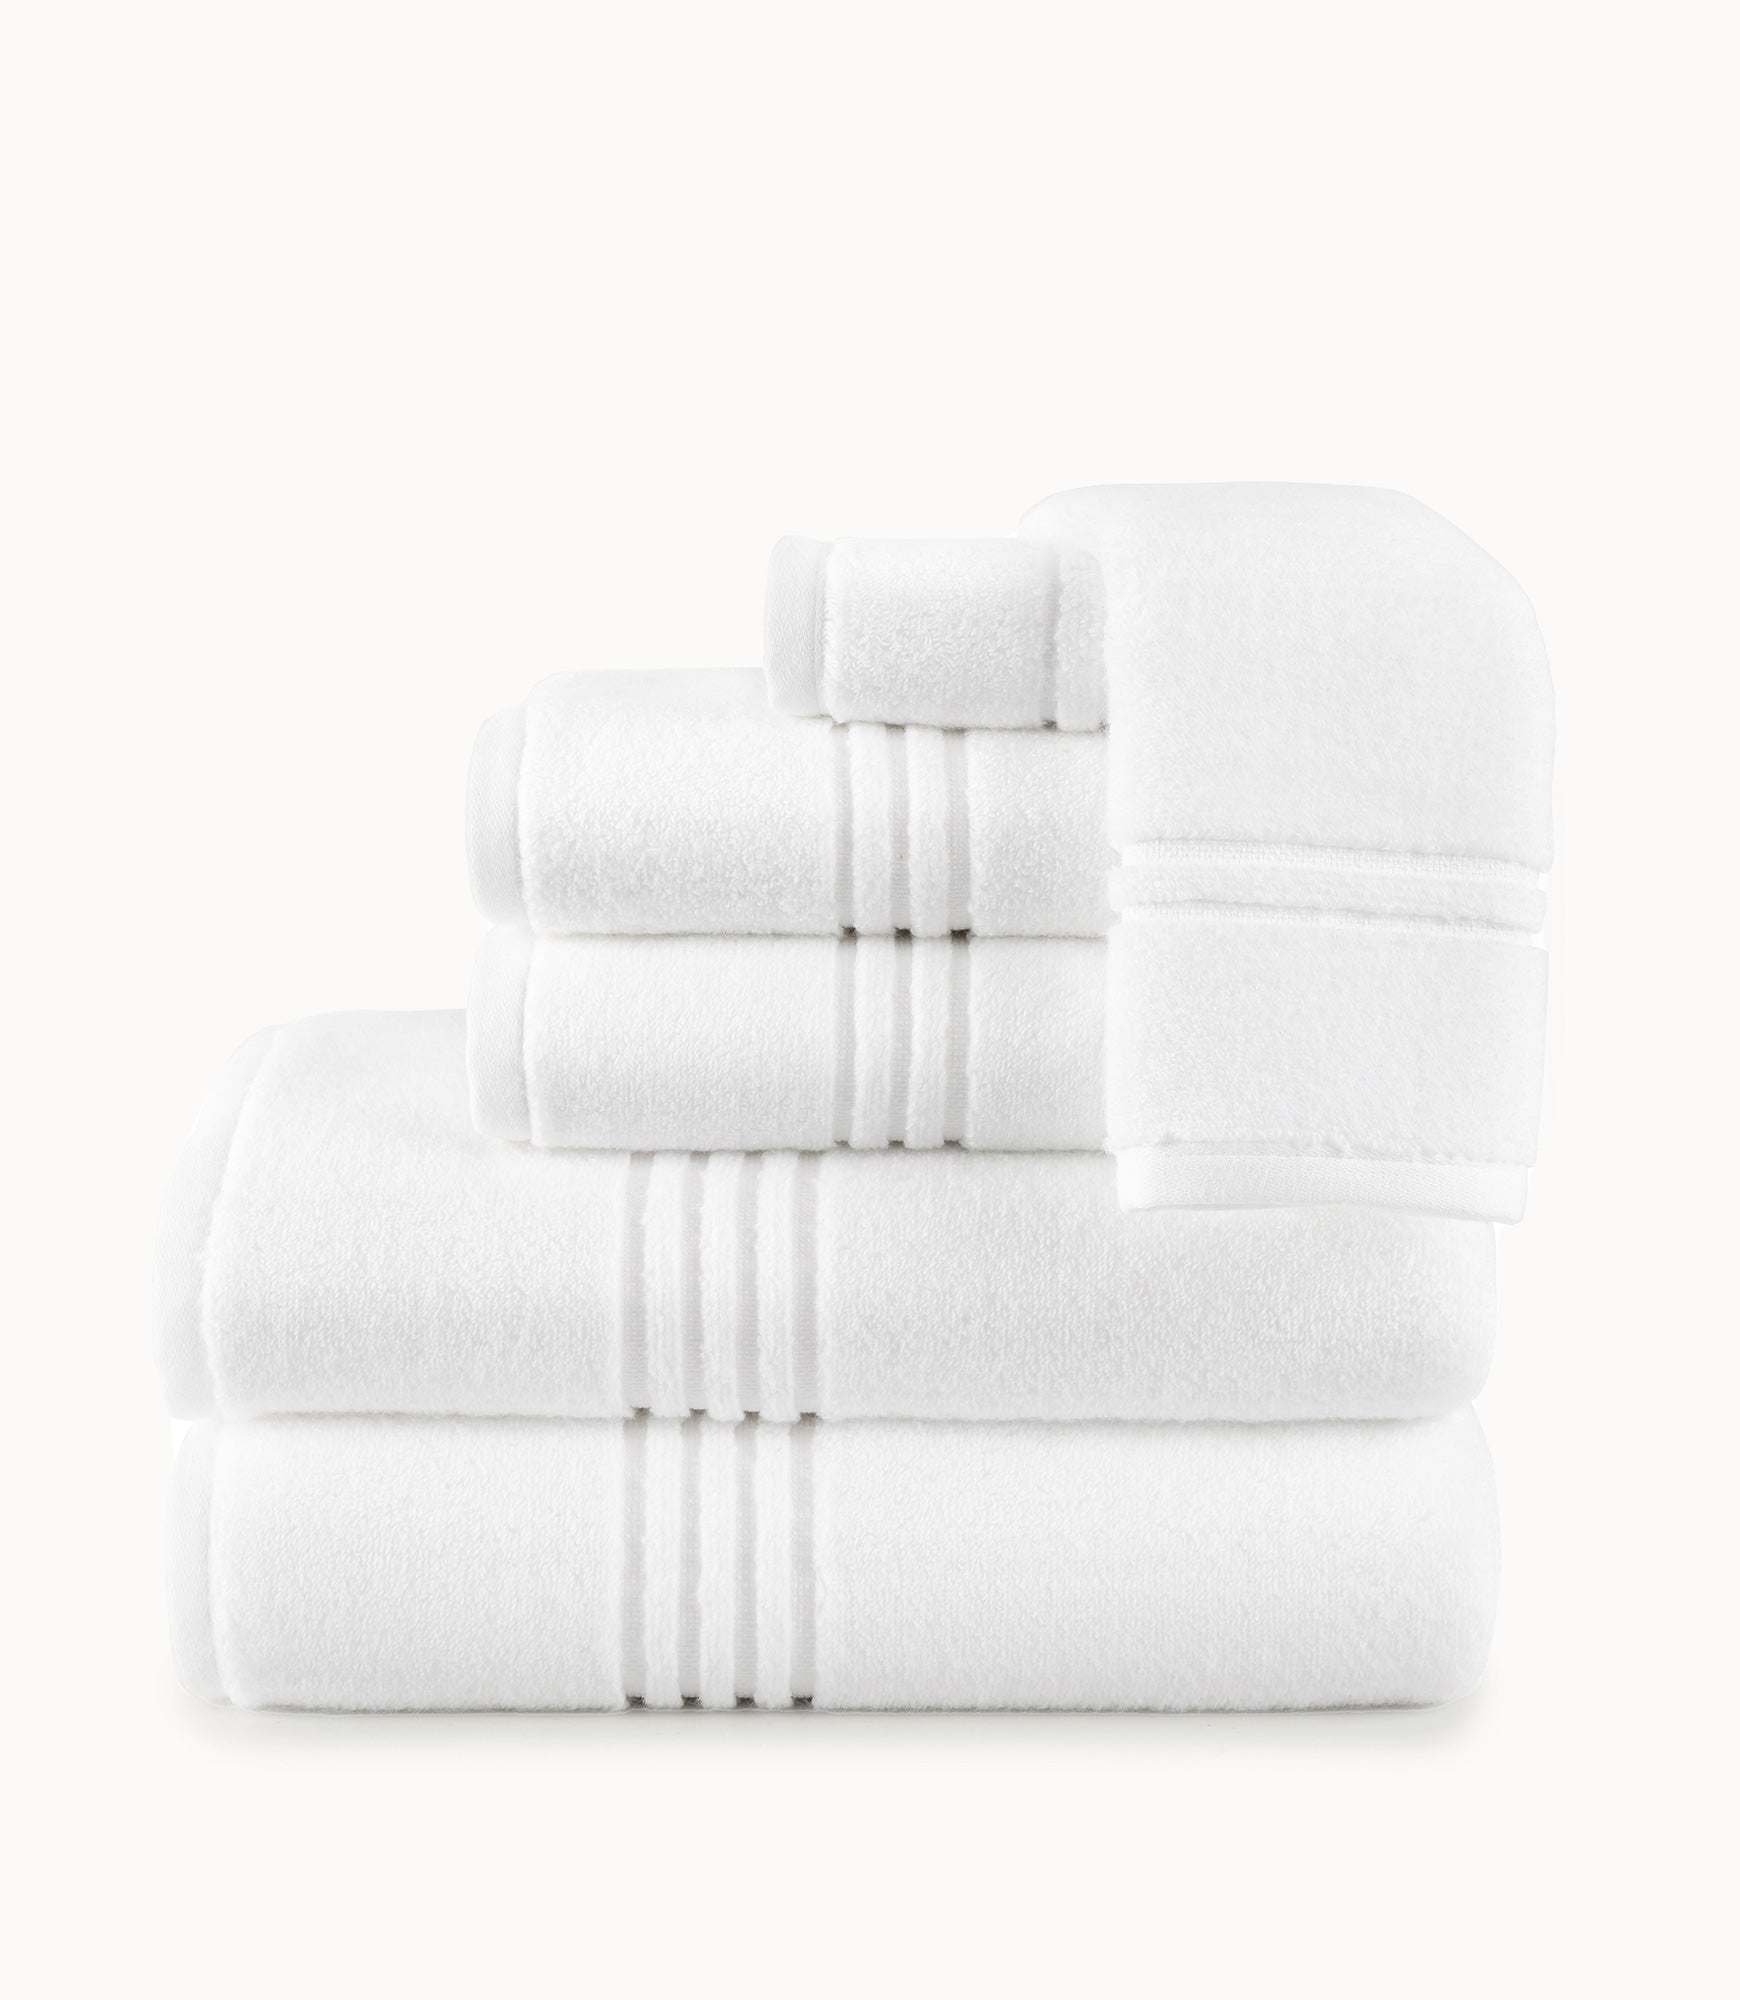 Cotton Alley 100% Cotton Bath Towel Set 6 Pcs 2 Bath Towels - 2